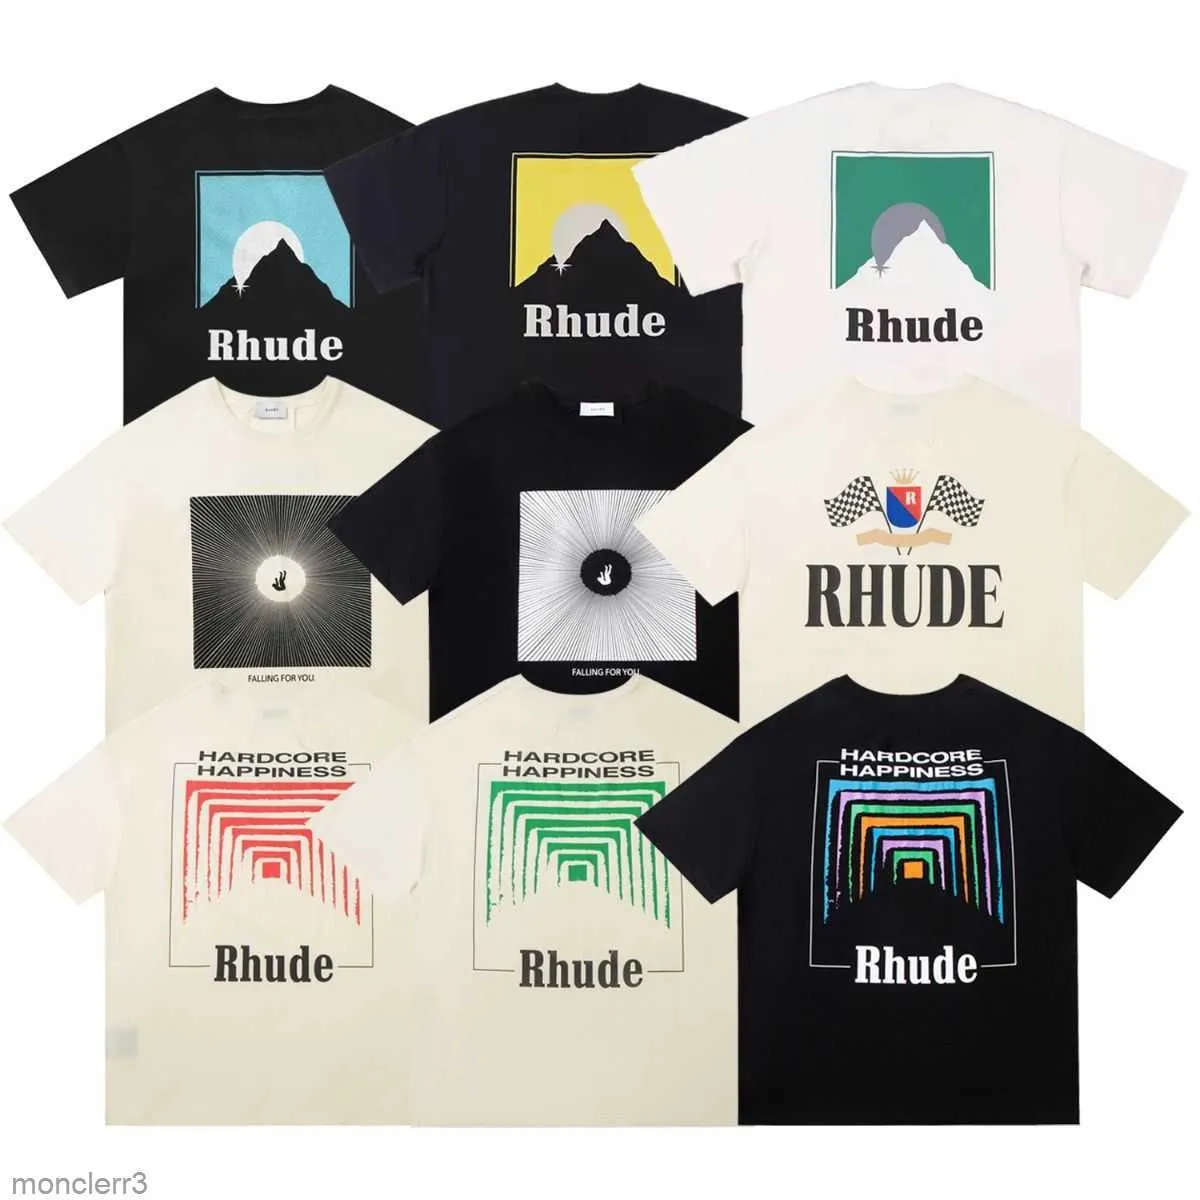 Rh Designers Mens Rhude T-shirts pour l'été Tops Lettre Polos Chemise Femme T-shirts Vêtements à manches courtes en coton T-shirts Shorts 8smy